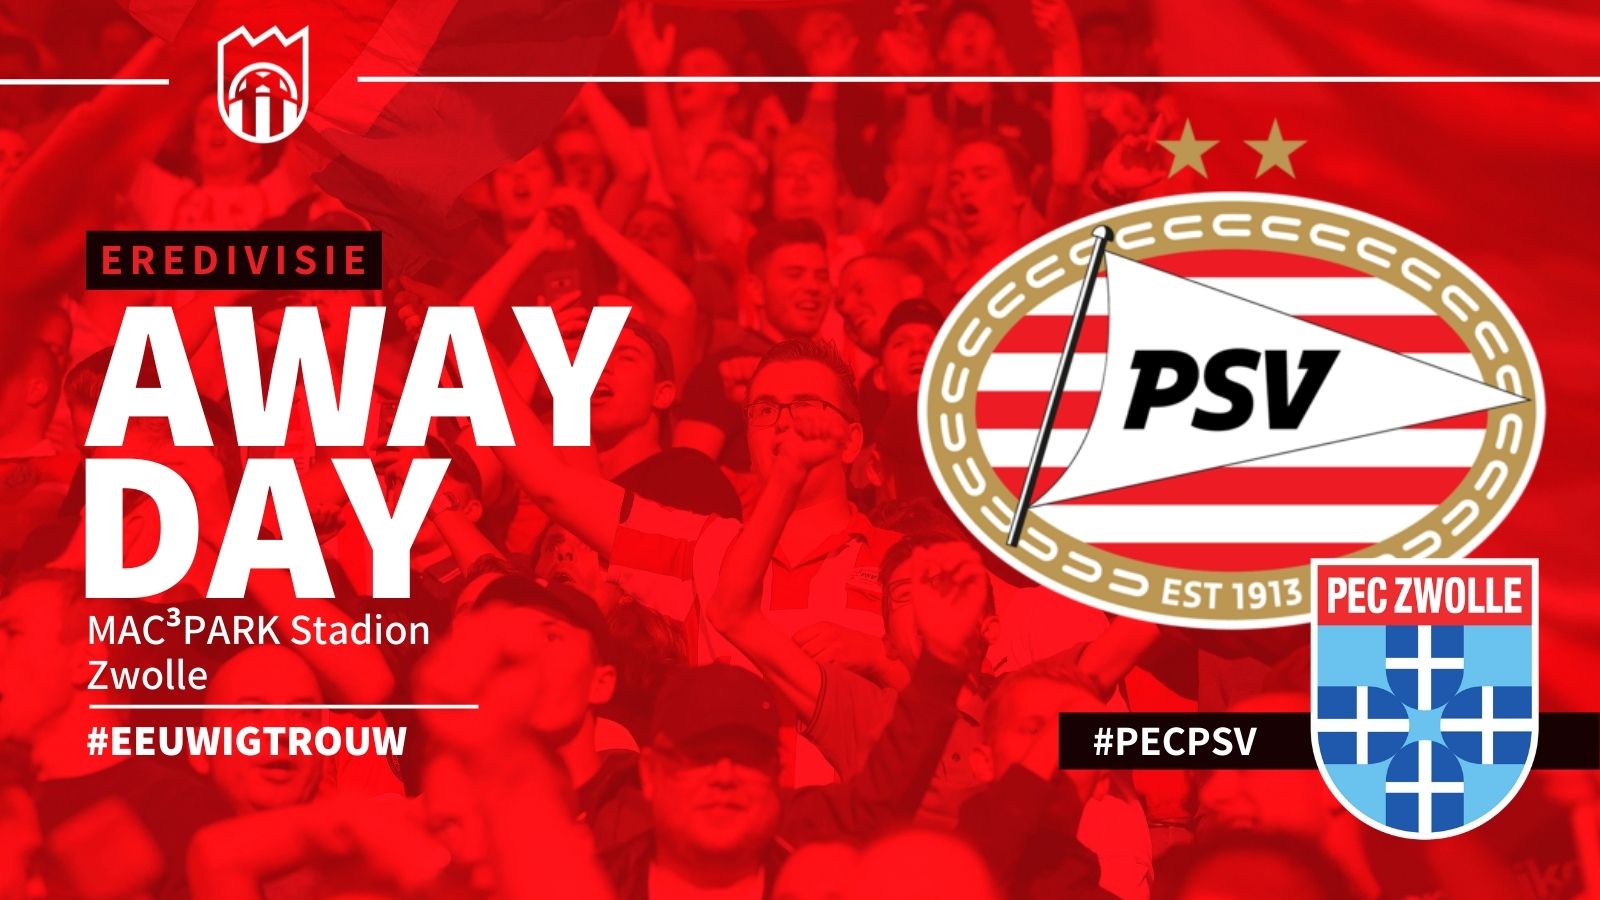 Eredivisie : PEC Zwolle - PSV (1 - 2)